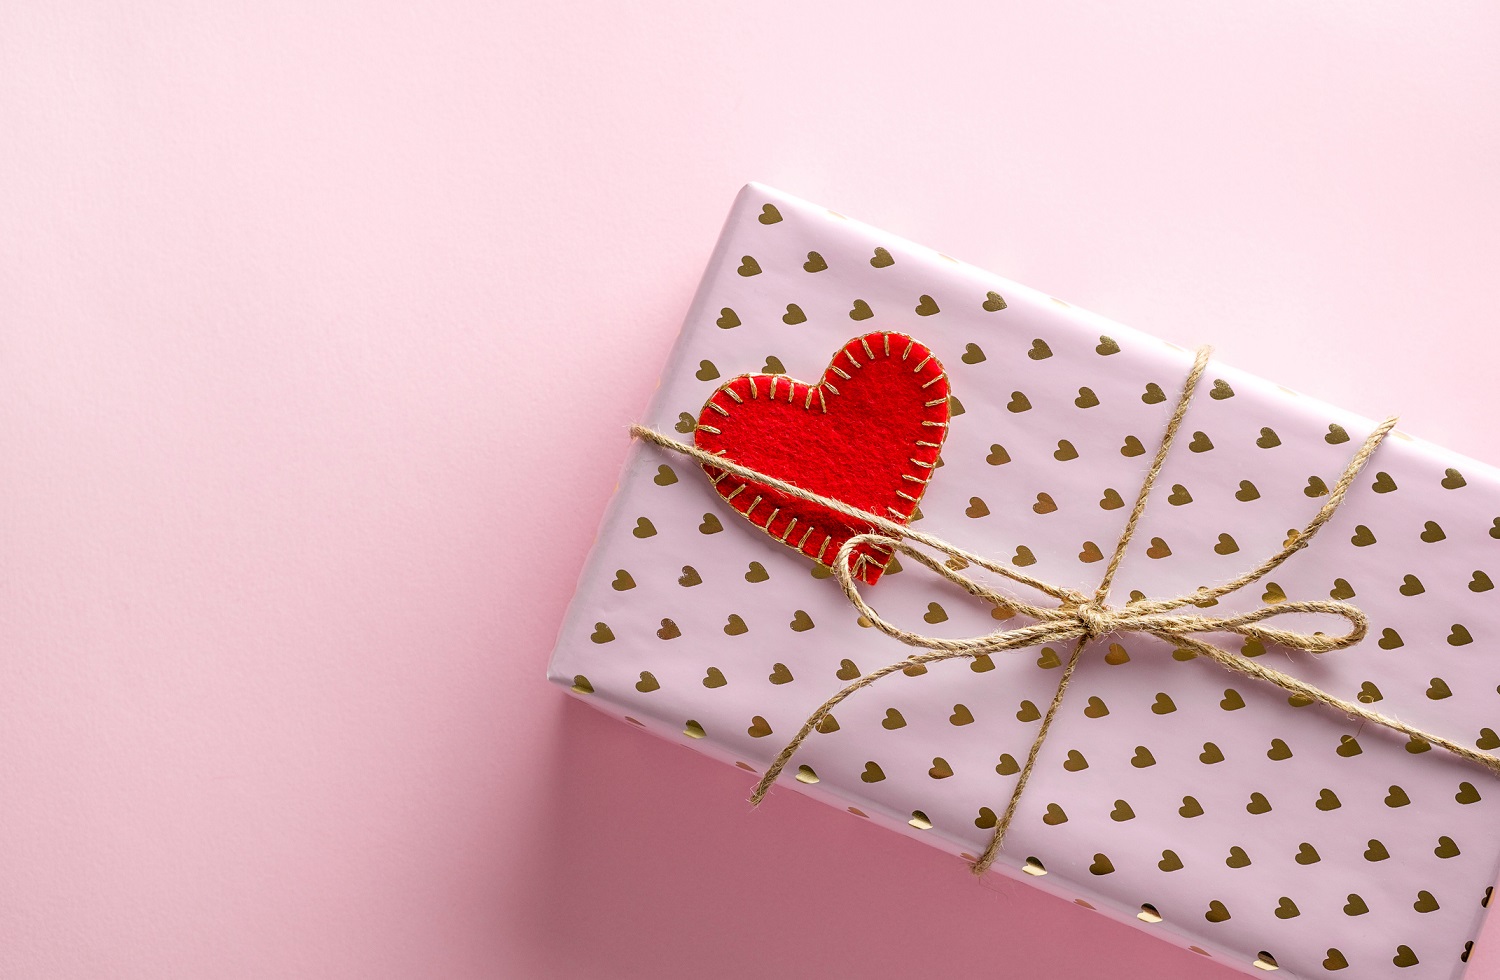 San Valentín 2019, 5 regalos originales Día del los Enamorados